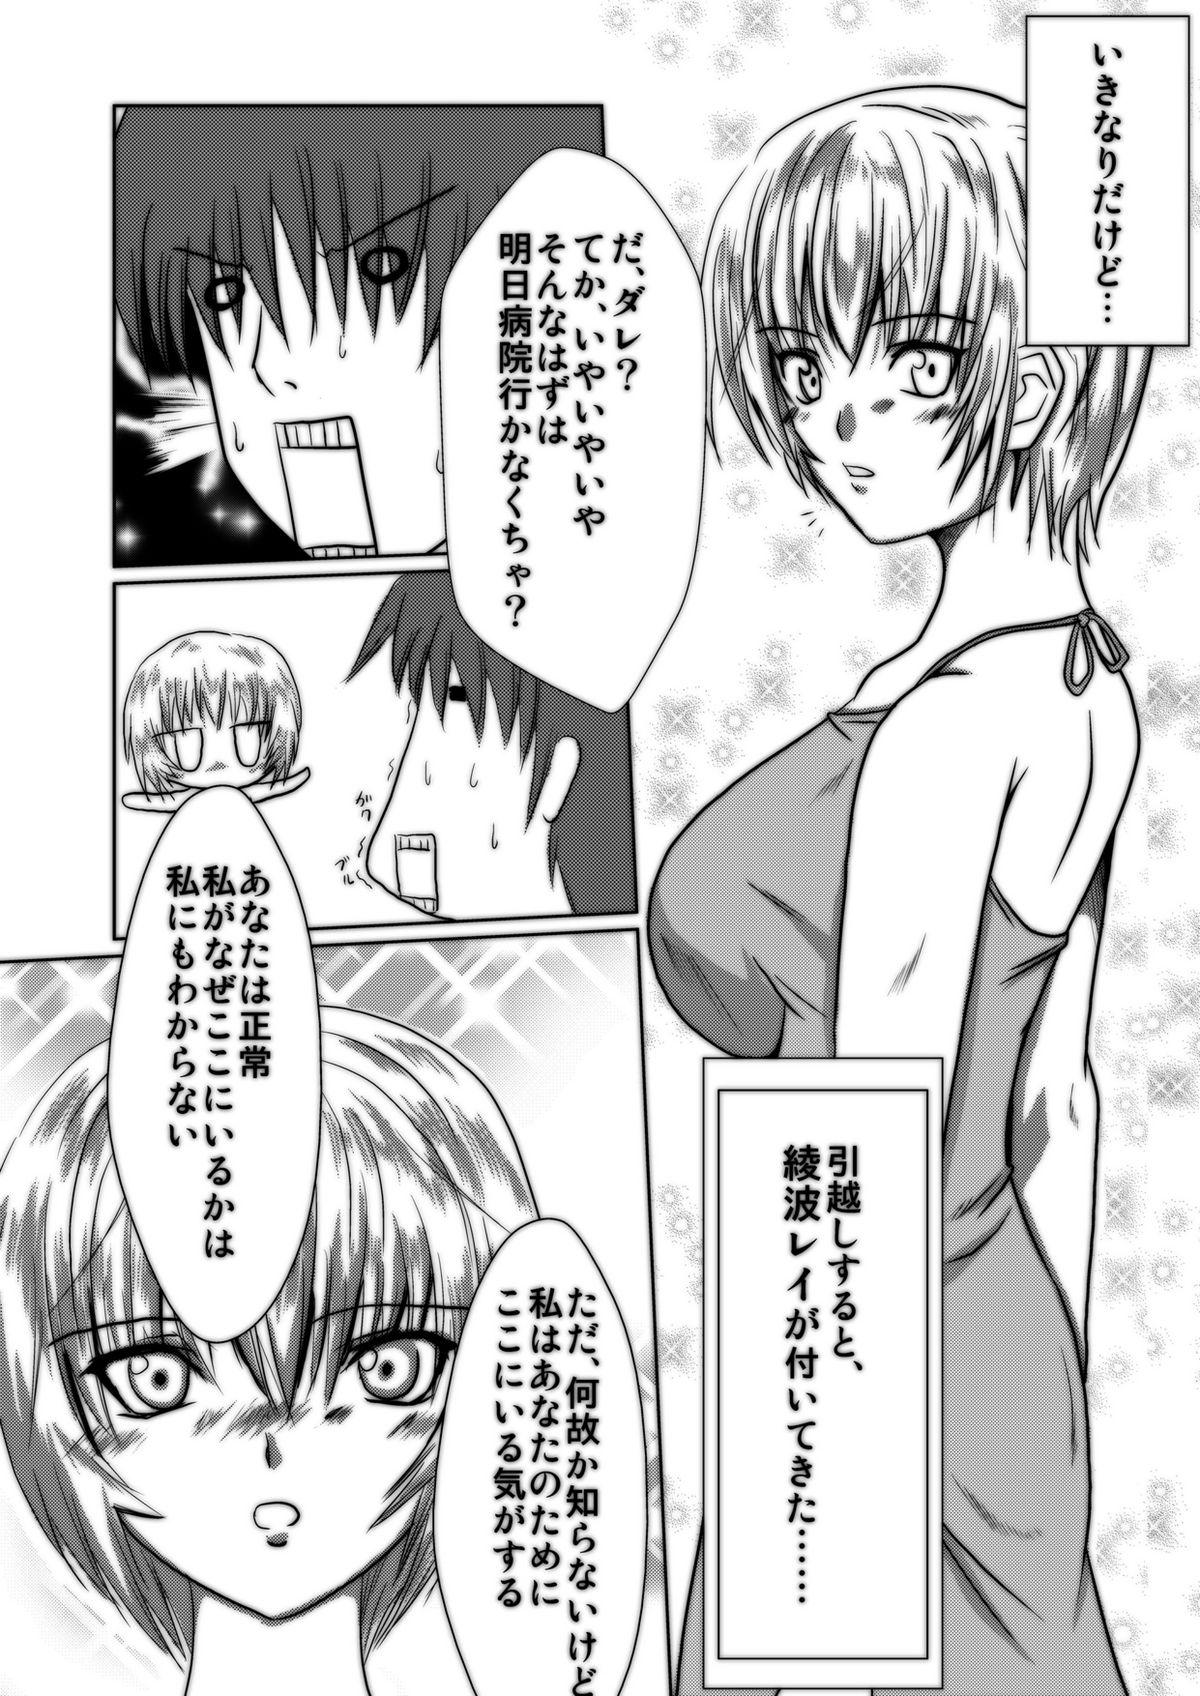 Face Bakunyuna Ayanami-san to no sei katsu! | Sexual activity with Rei's breasts! - Neon genesis evangelion Facial - Page 2